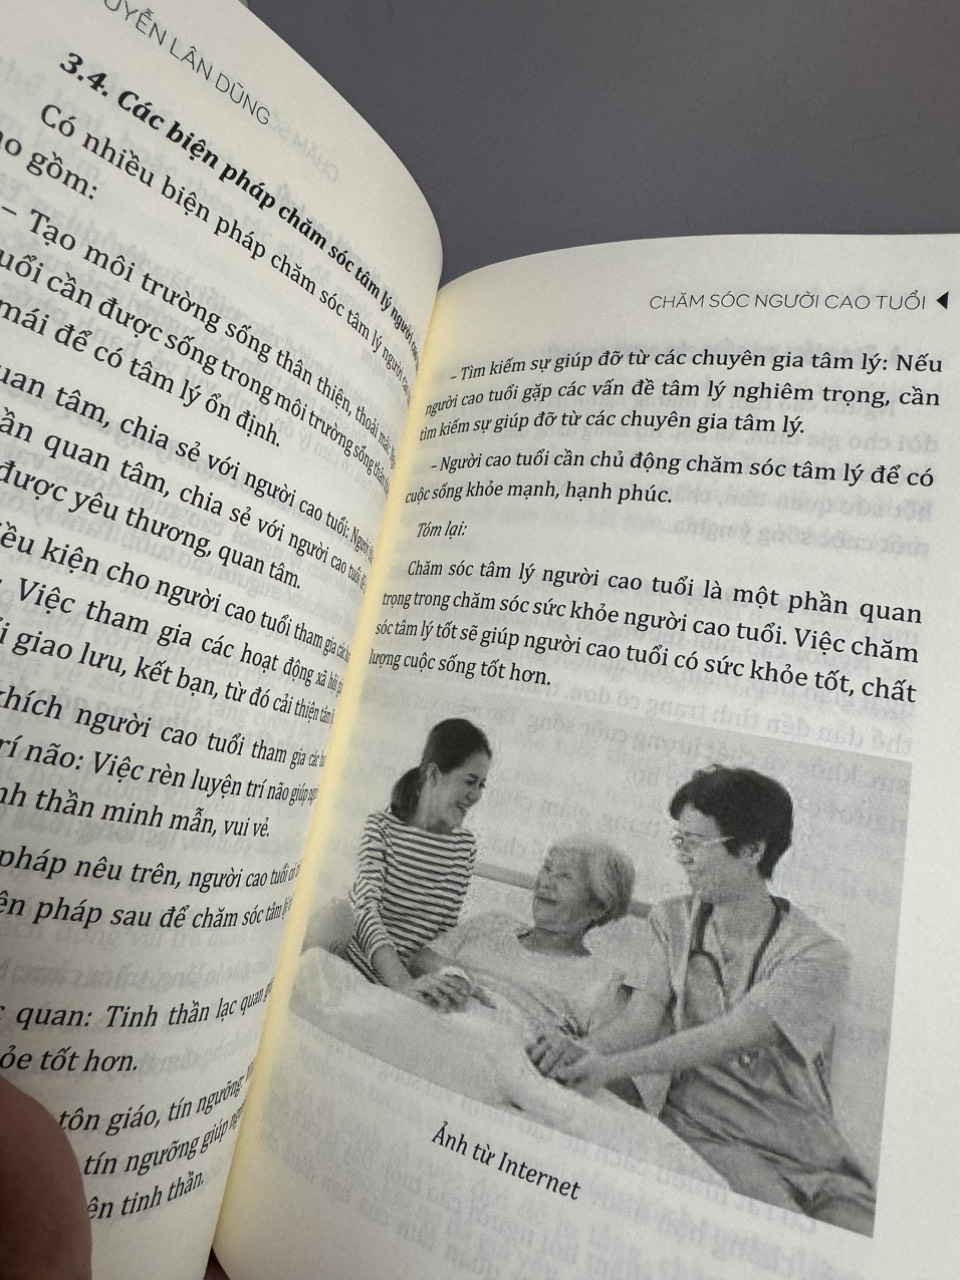 CHĂM SÓC NGƯỜI CAO TUỔI - CẨM NANG CHO SỨC KHỎE NGƯỜI CAO TUỔI - Nguyễn Lân Dũng - Hanoi Books 